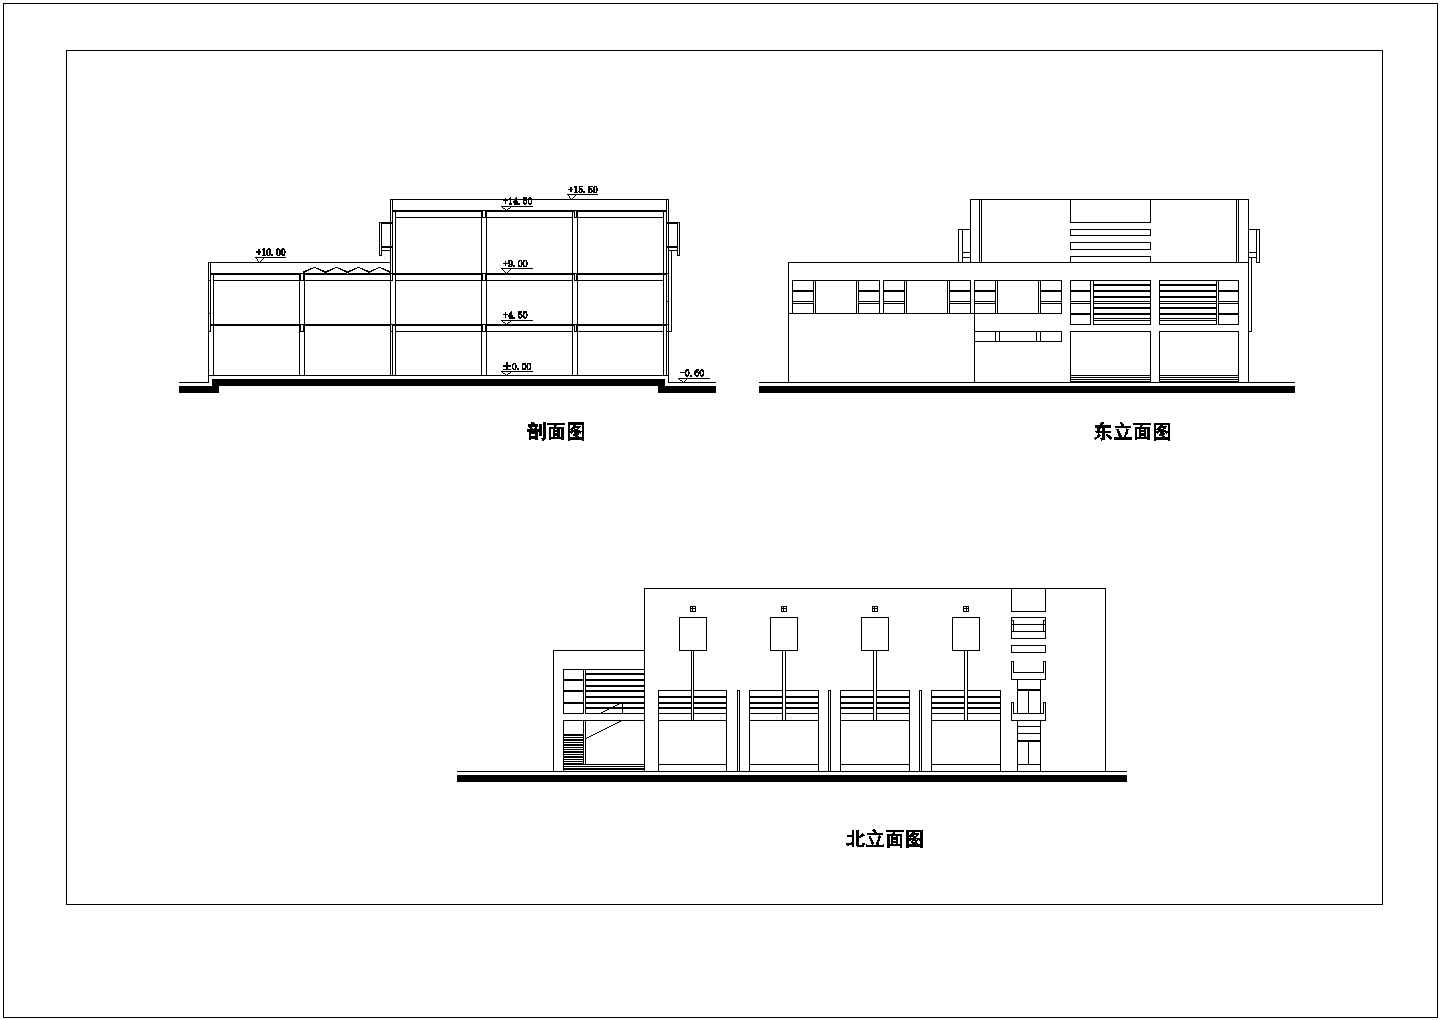 临泽某中学校园总体规划与单体设计方案图